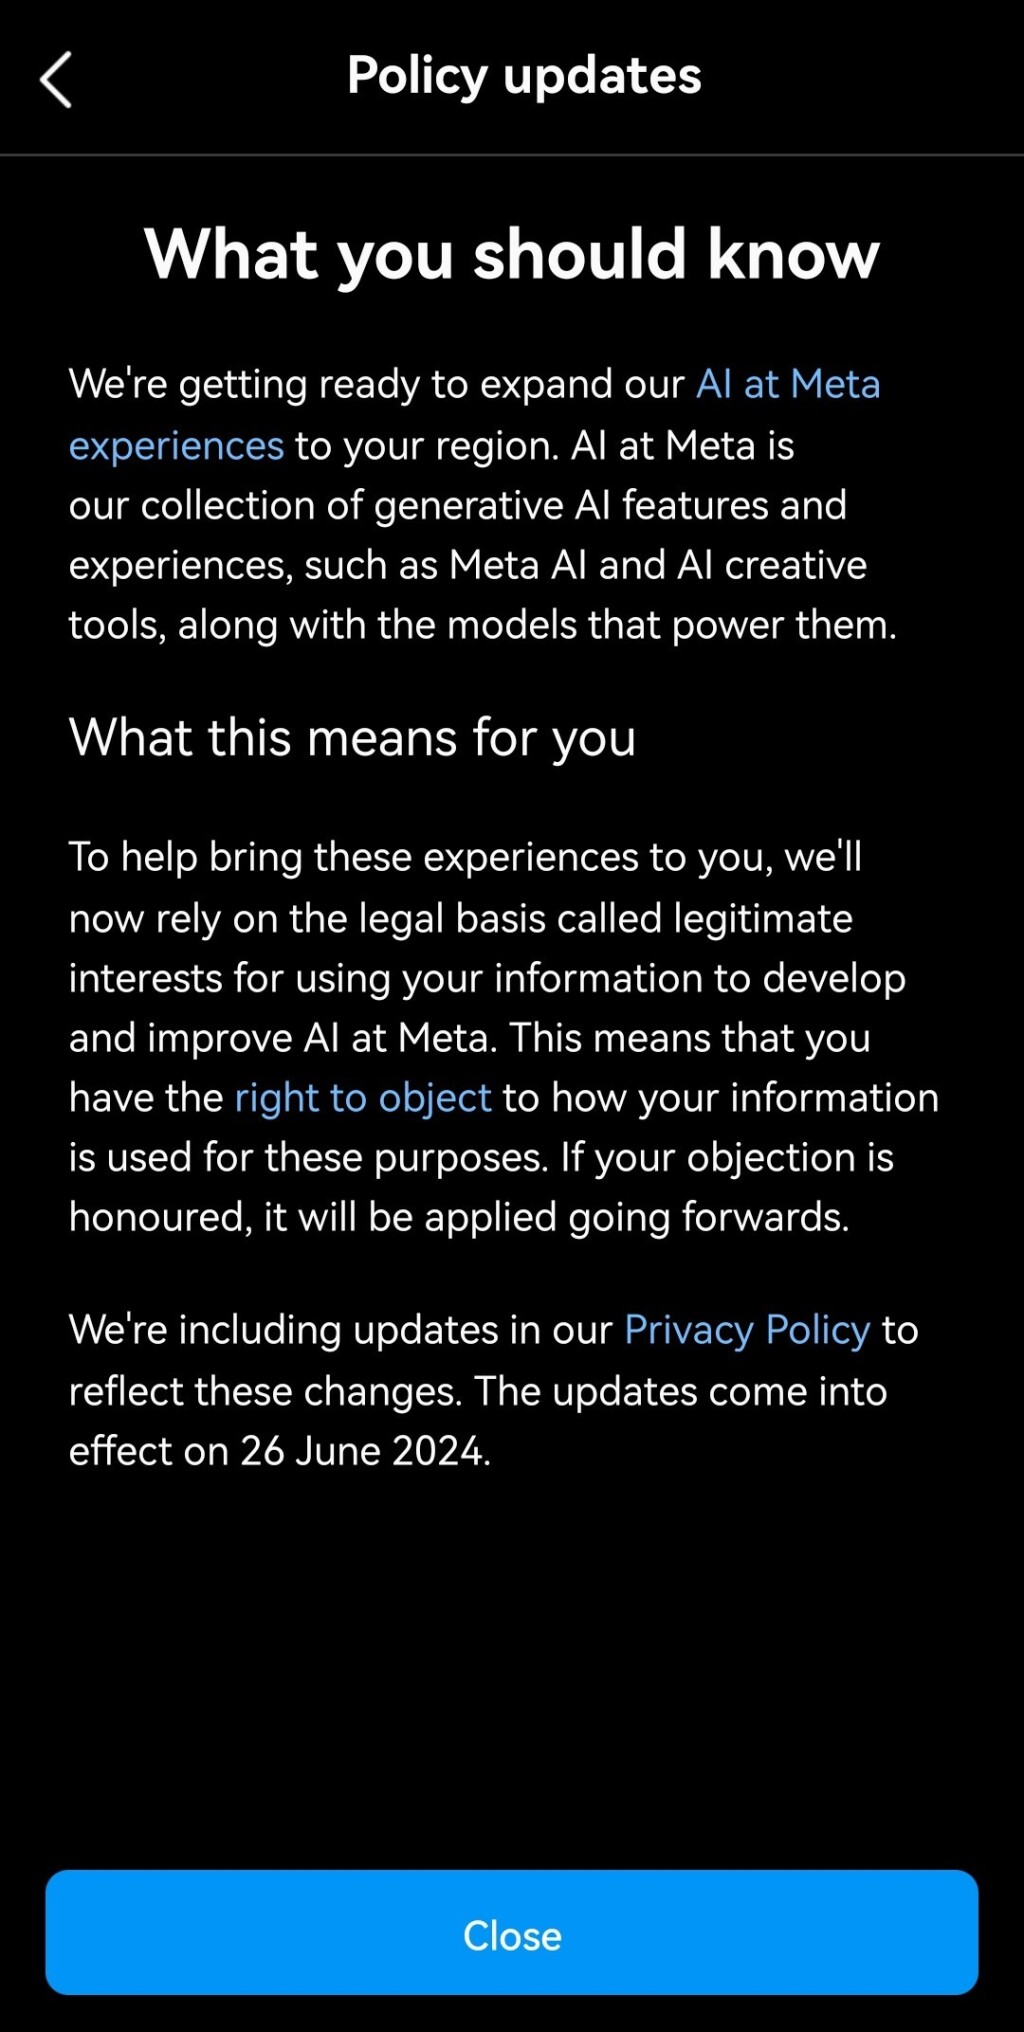 Zrzut ekranowy wyjaśnienia w języku angielskim, wyświetlonego w aplikacji Instagram, informującego o prawie do sprzeciwu wobec przetwarzania danych dla celów AI firmy Meta.